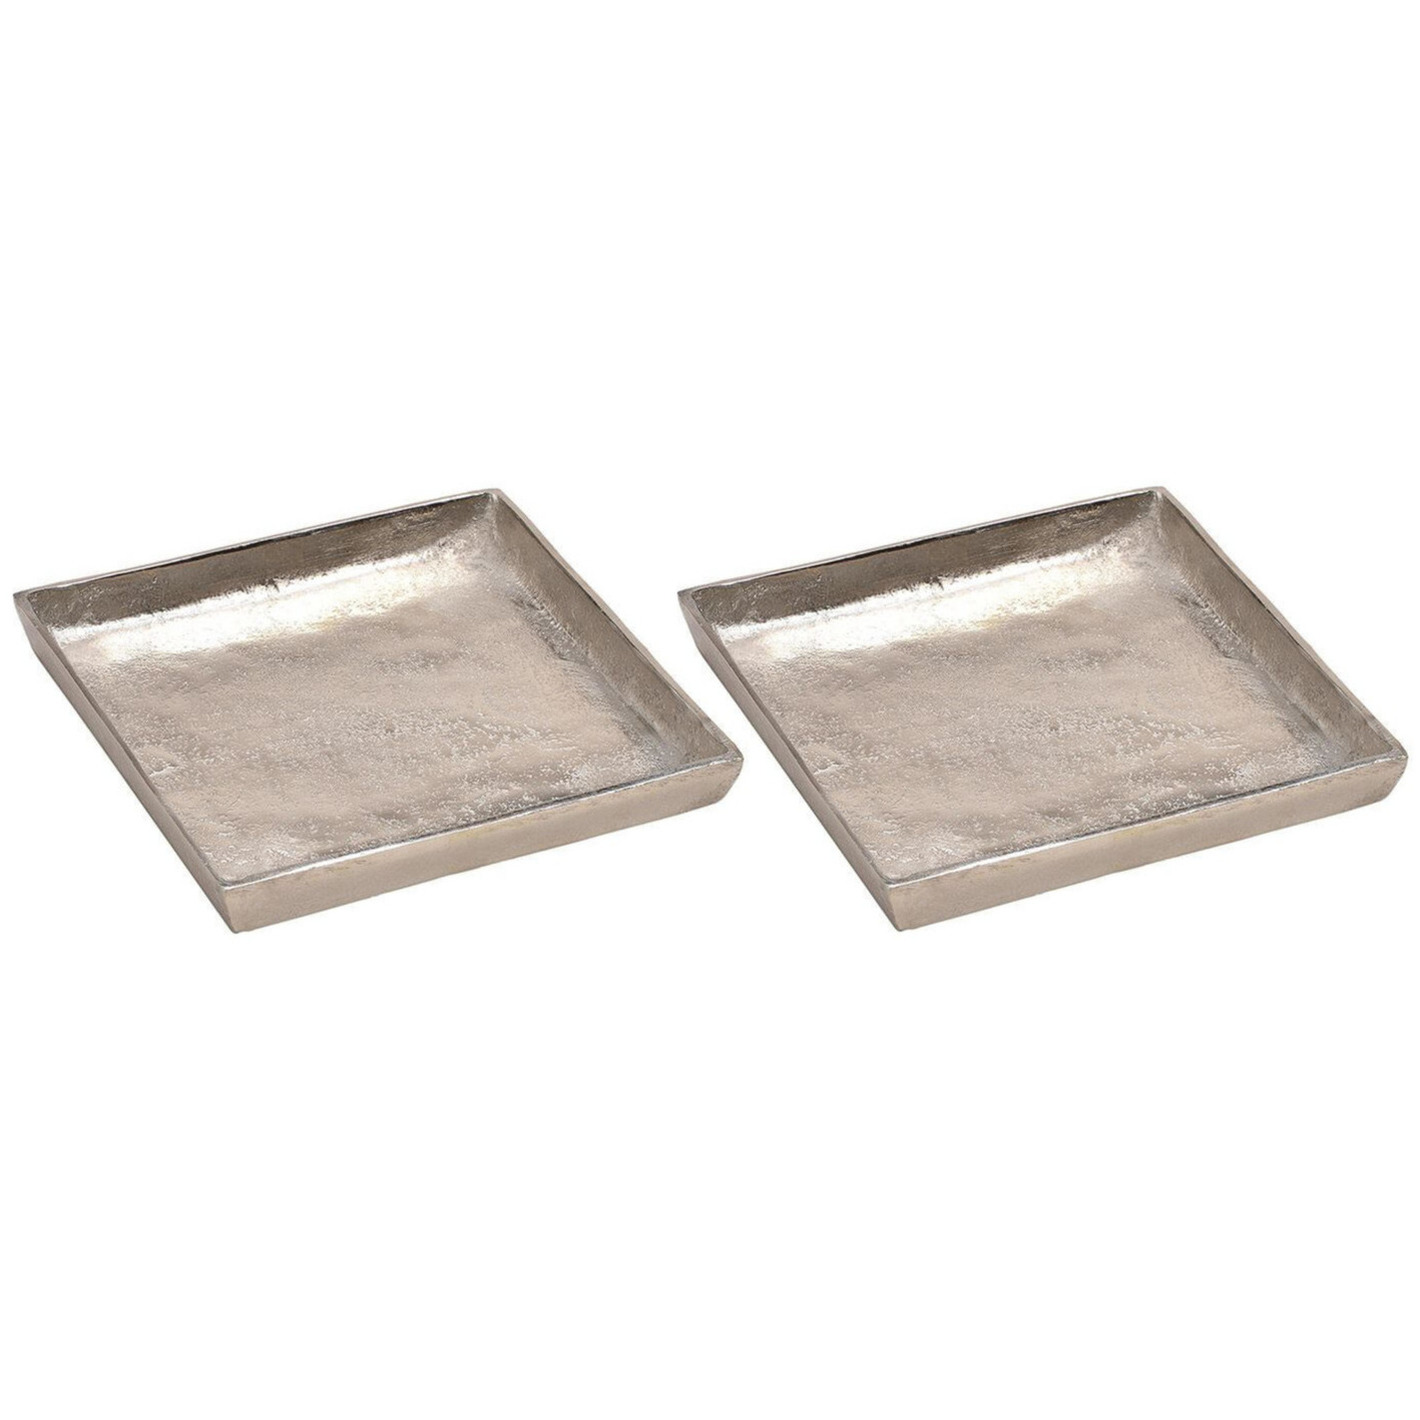 2x Woondecoratie aluminium dienbladen-plateaus zilver vierkant 20 cm